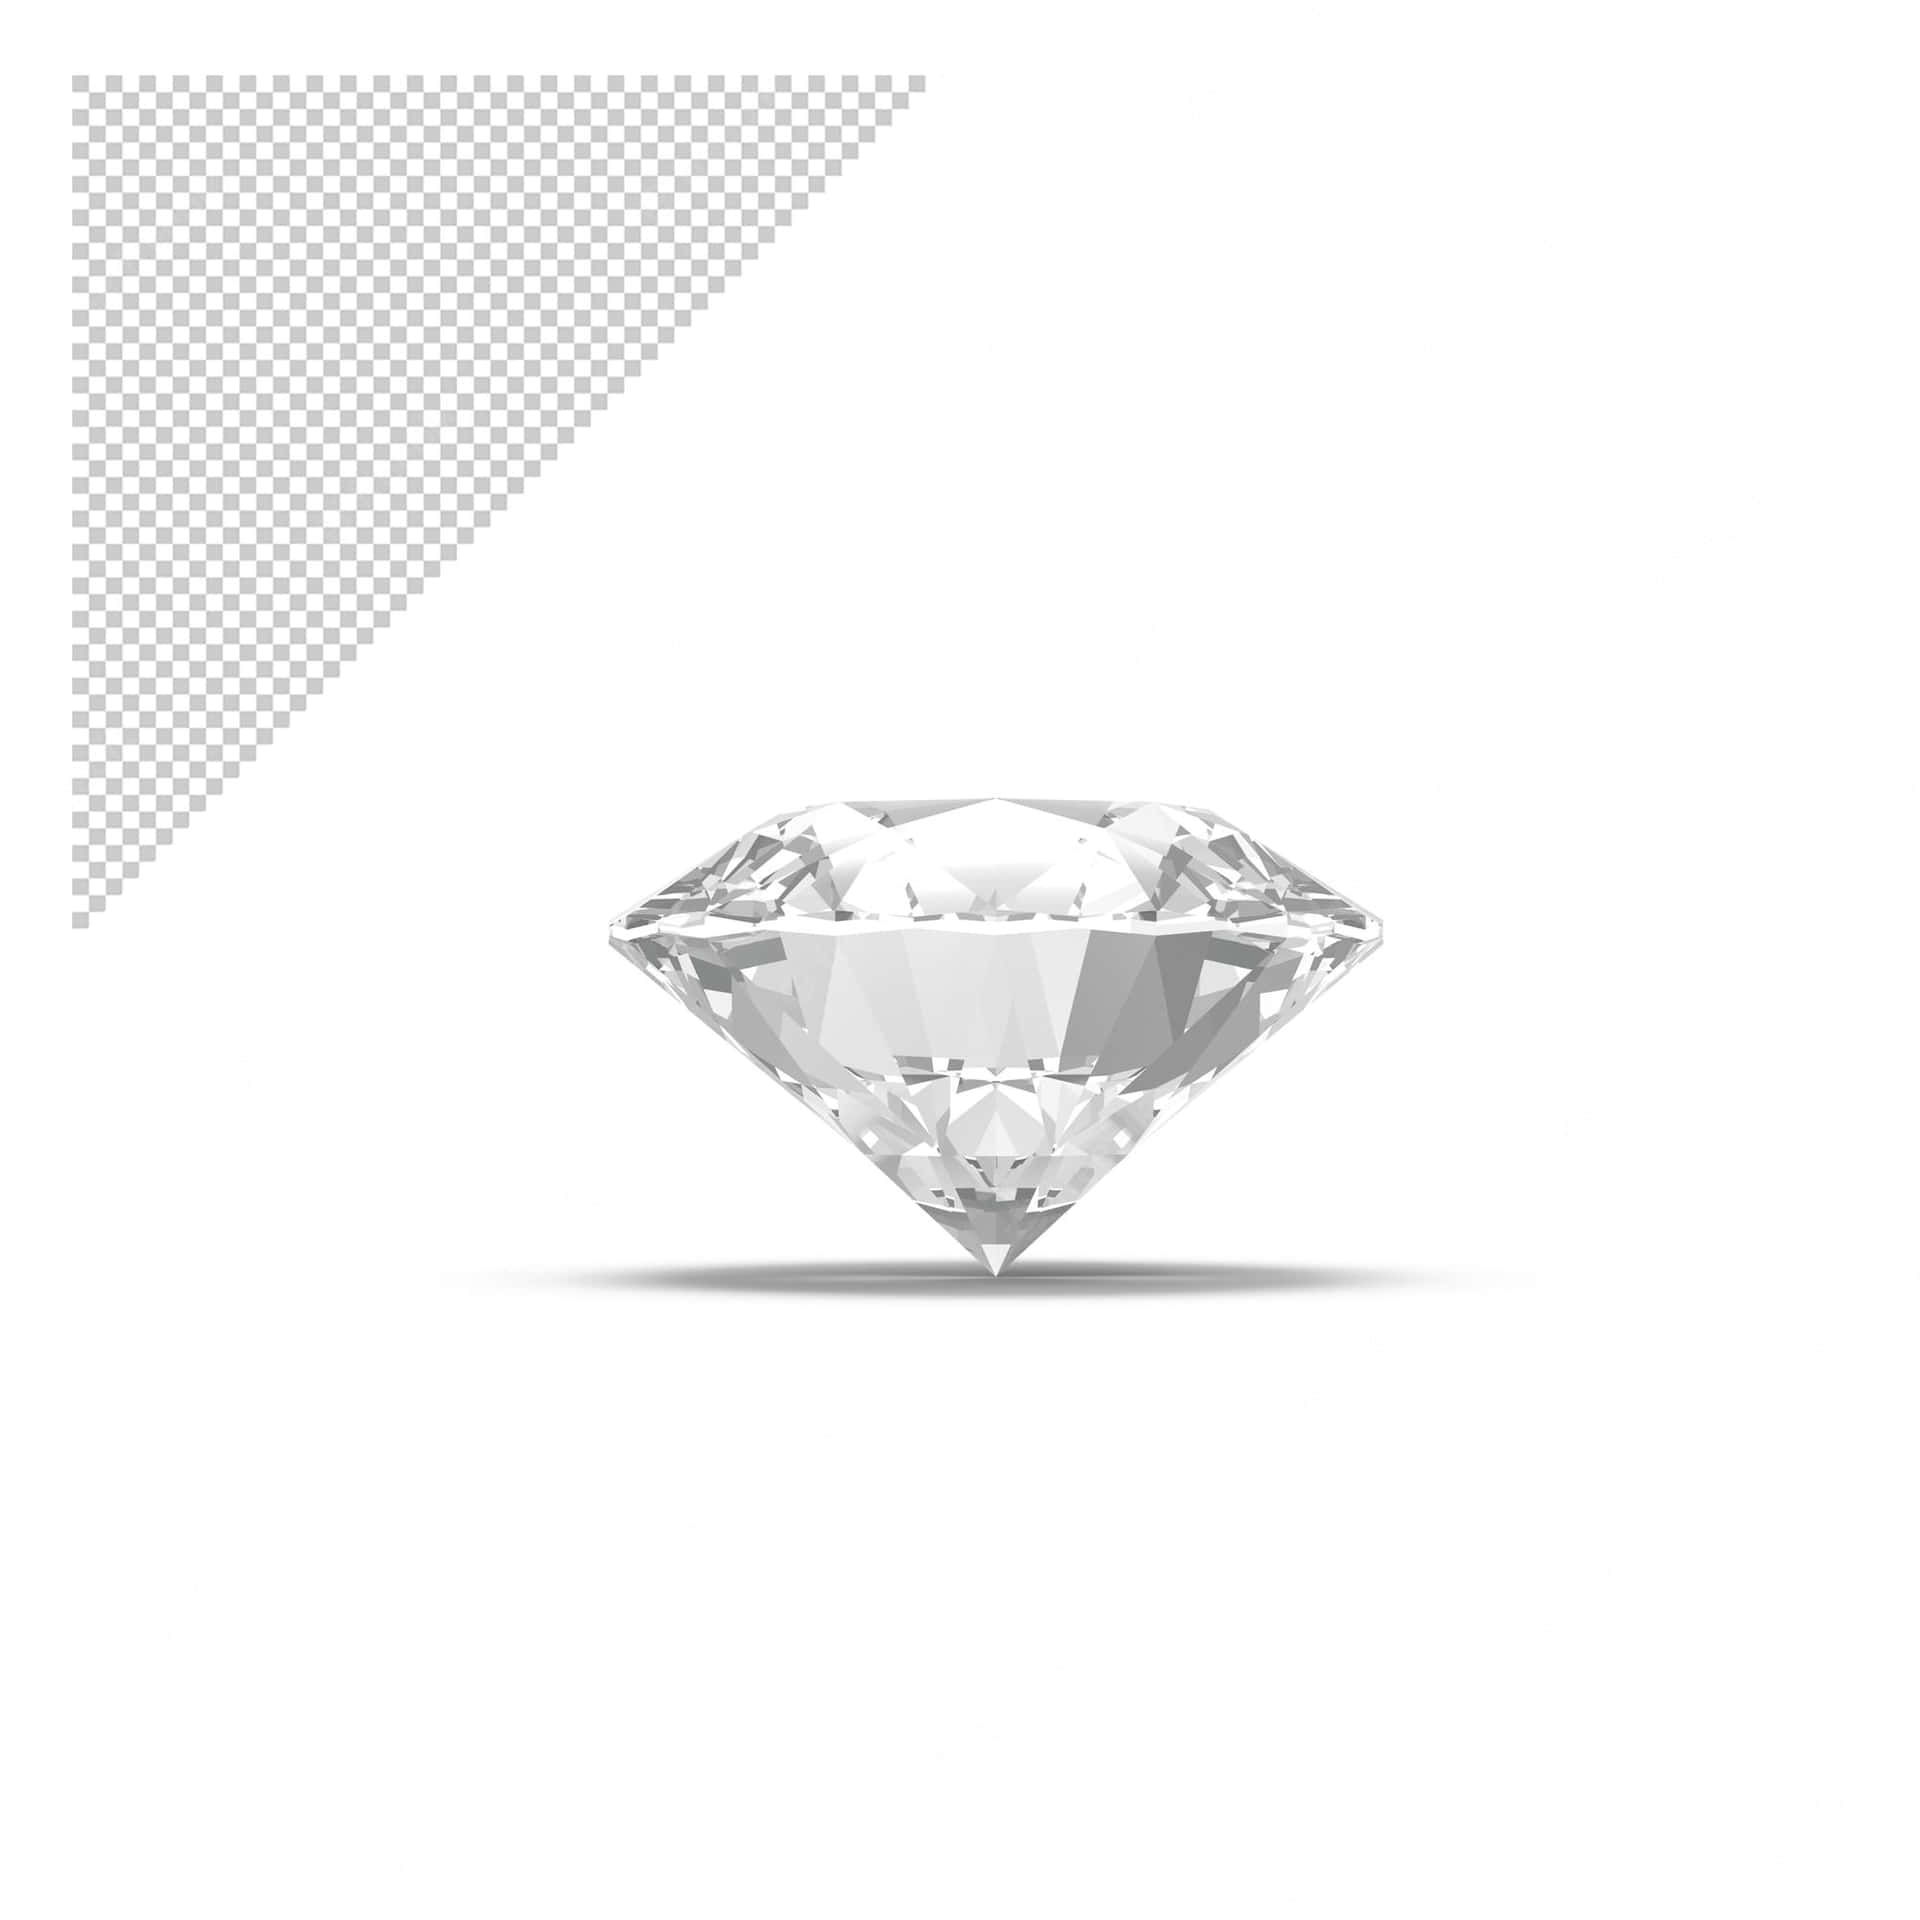 Holensie Sich Den Atemberaubenden Diamant-look Mit Unserer Stilvollen Schmuckkollektion! Wallpaper